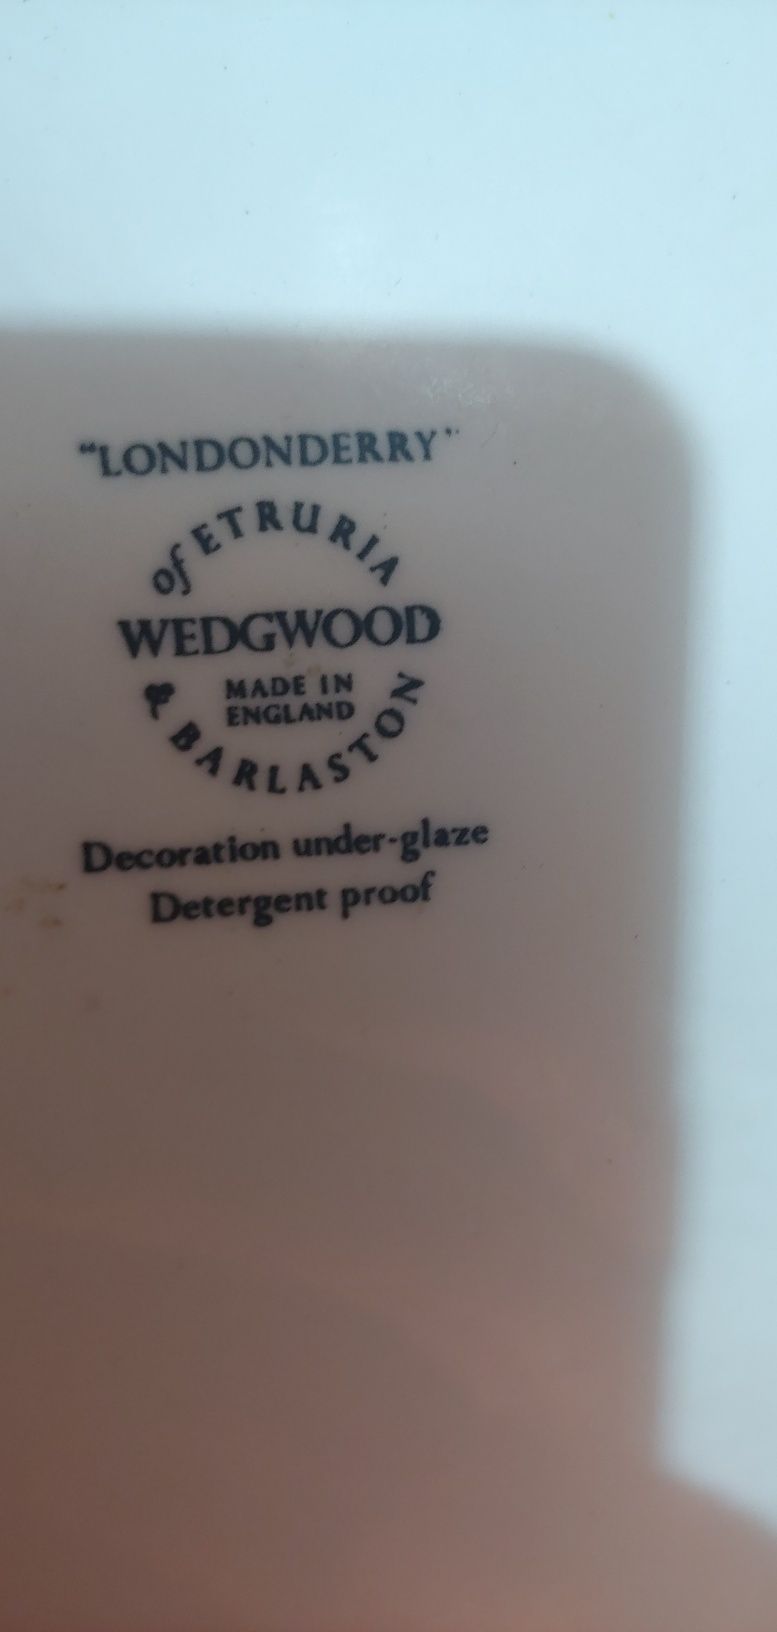 Sygnowany talerz dekoracyjny Wedgwood lata 50. (FT38)